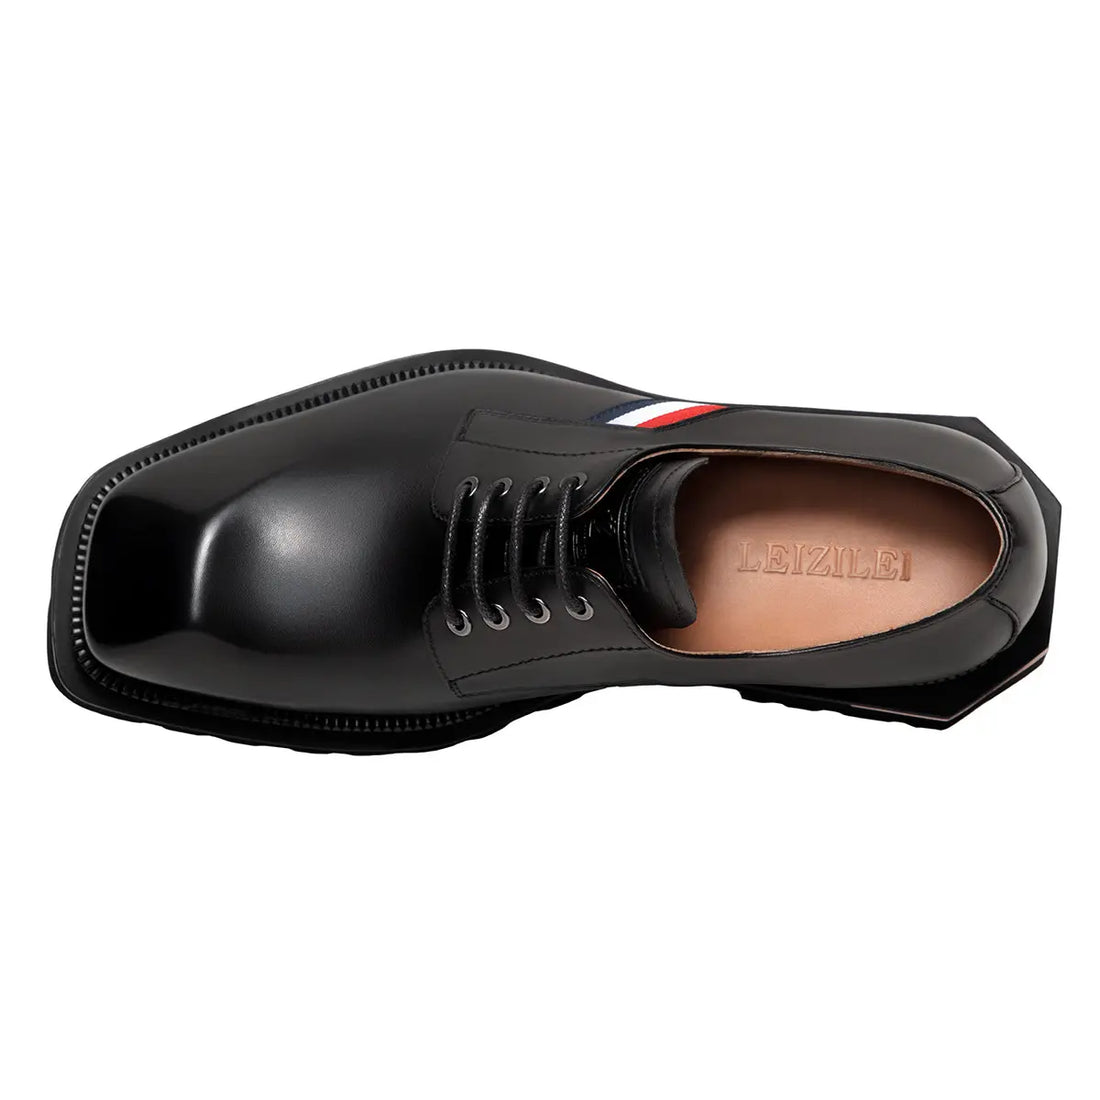 Original handmade calfskin platform big toe Mens Derby Shoes 202901A LEIZILEI